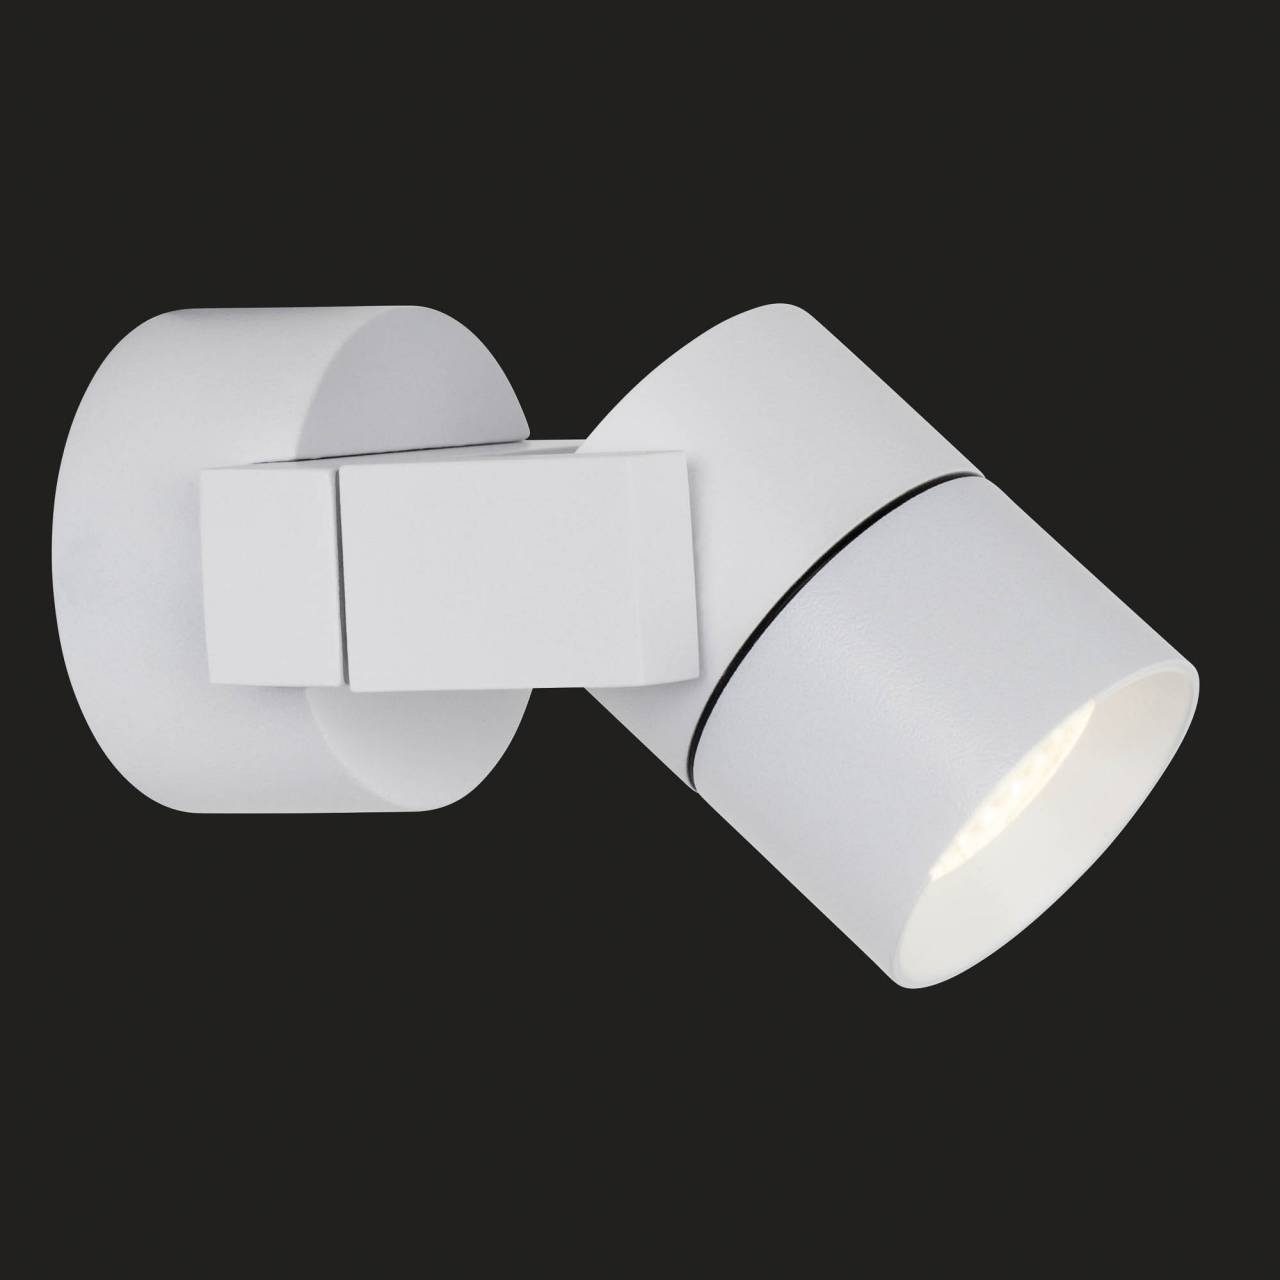 AEG LED Wandstrahler weiß wechselbar, x x Kristos, cm, 7 Alu-Druckguss/Glas, lm, 310 10 LED Warmweiß, schwenkbar, 9 warmweiß